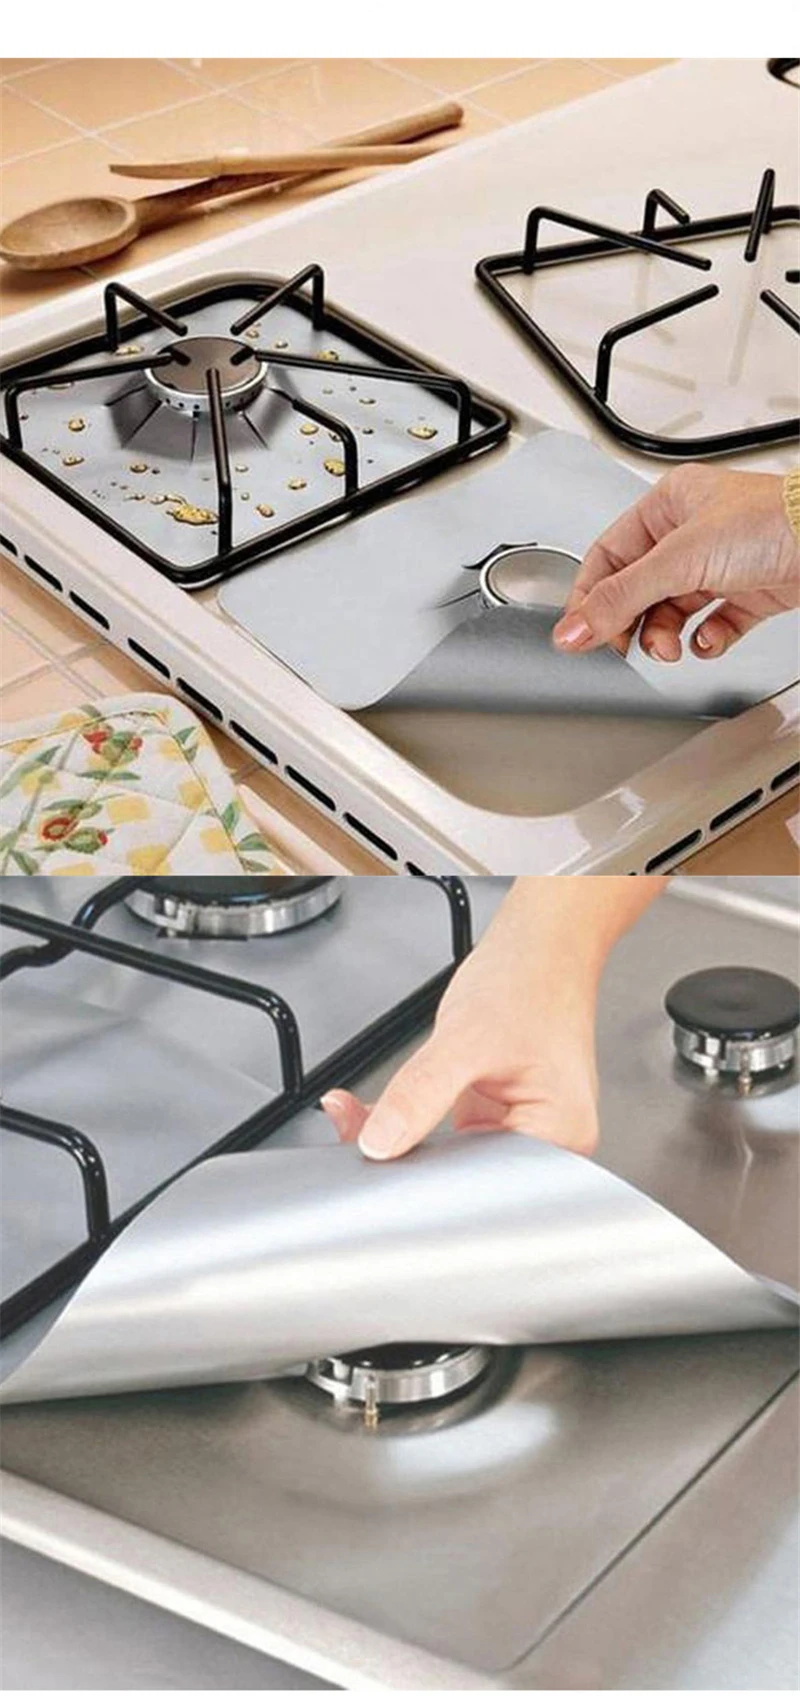 Кухонная плита с тефлоновым тросом, термостойкая Защитная плита с антипригарным покрытием для выпечки, барбекю, жаркого коврика